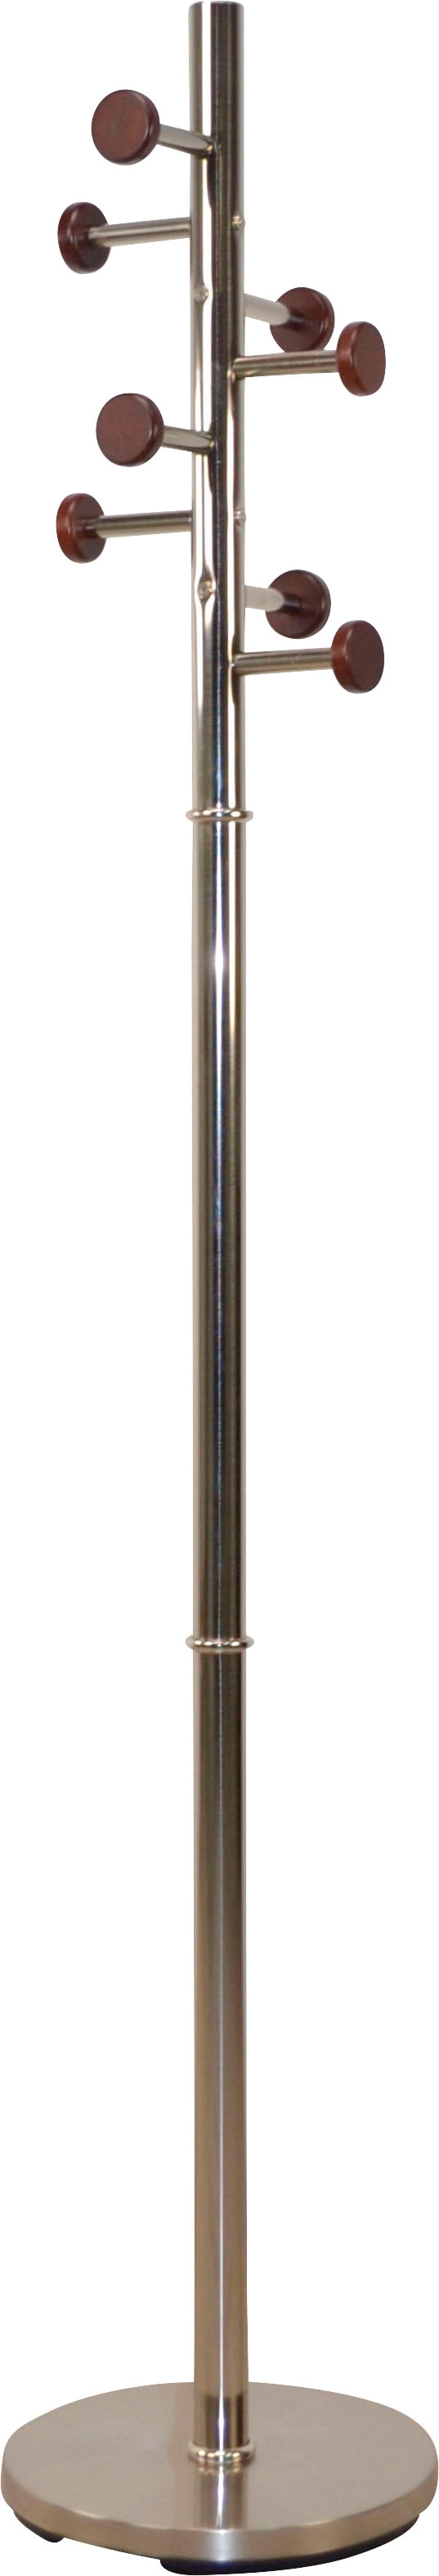 INOSIGN Garderobenständer, aus Metall, Höhe 172 cm, 8 Haken